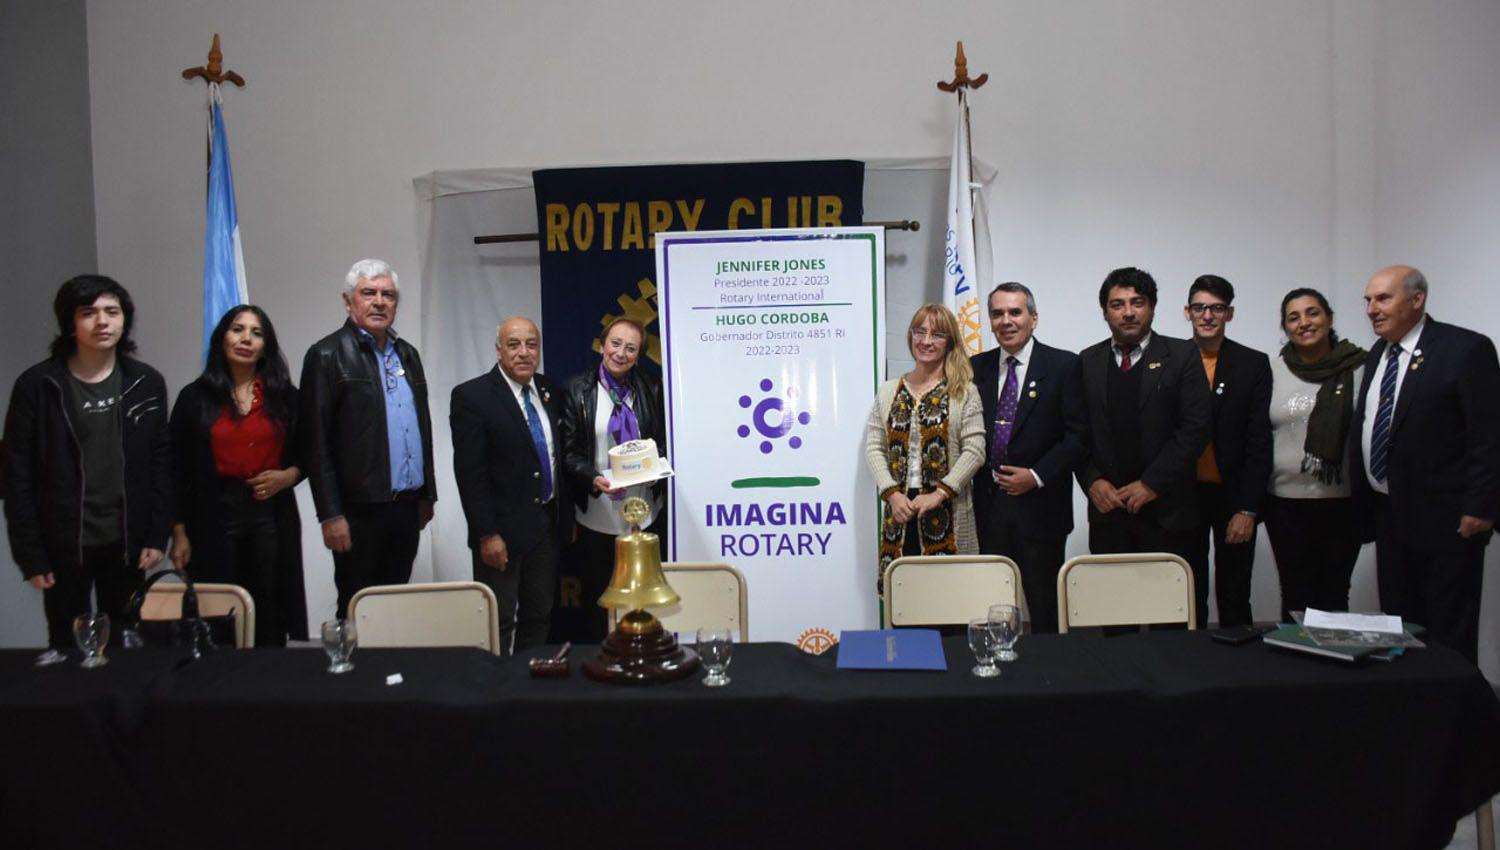 El Gobernador del Distrito 4851 visitoacute el Rotary Club Internacional de Las Termas de Riacuteo Hondo